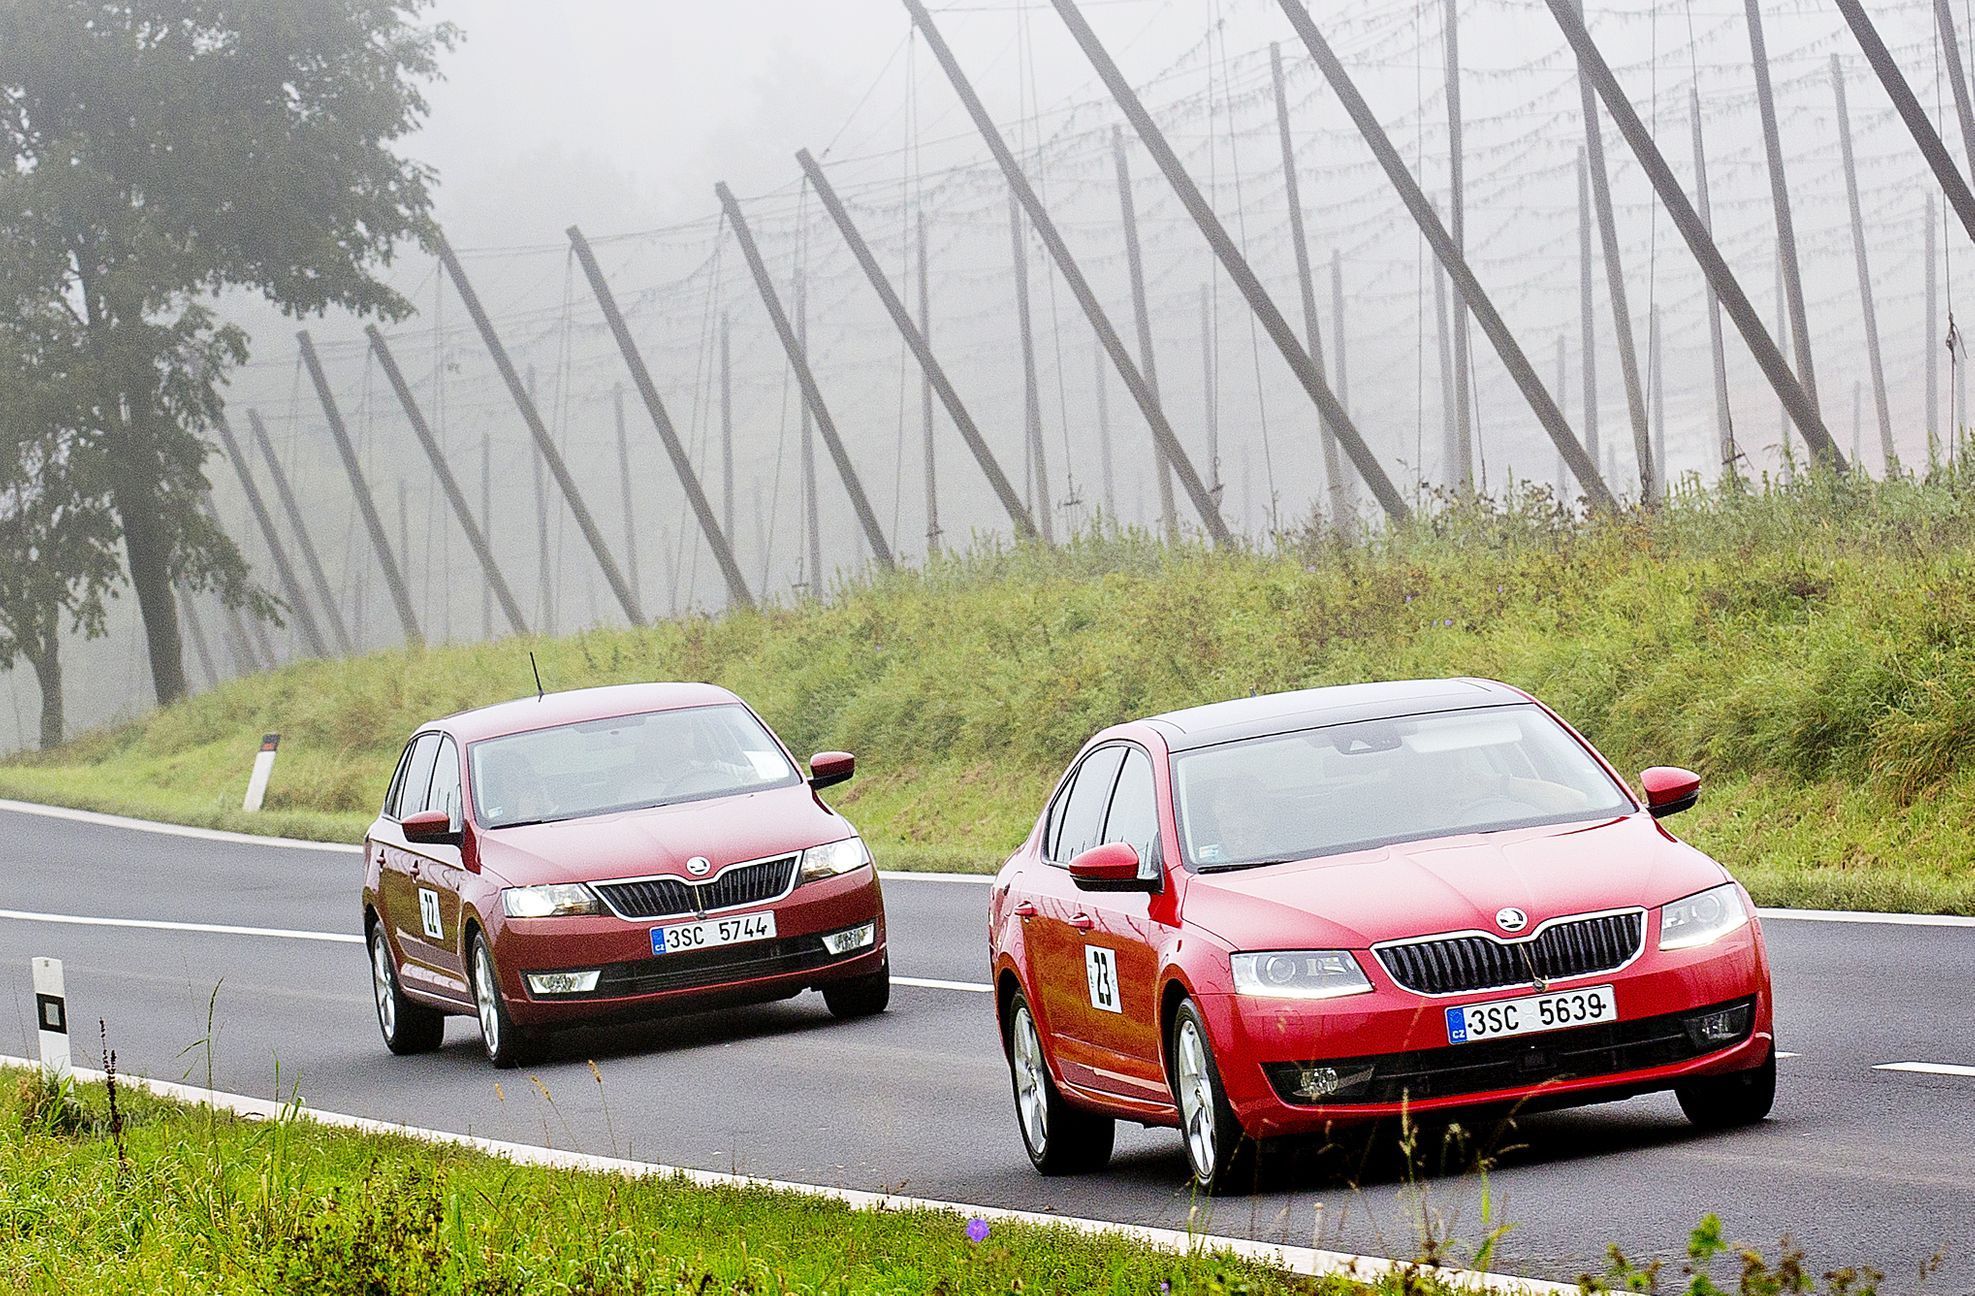 Škoda economy run 2014 - jízda